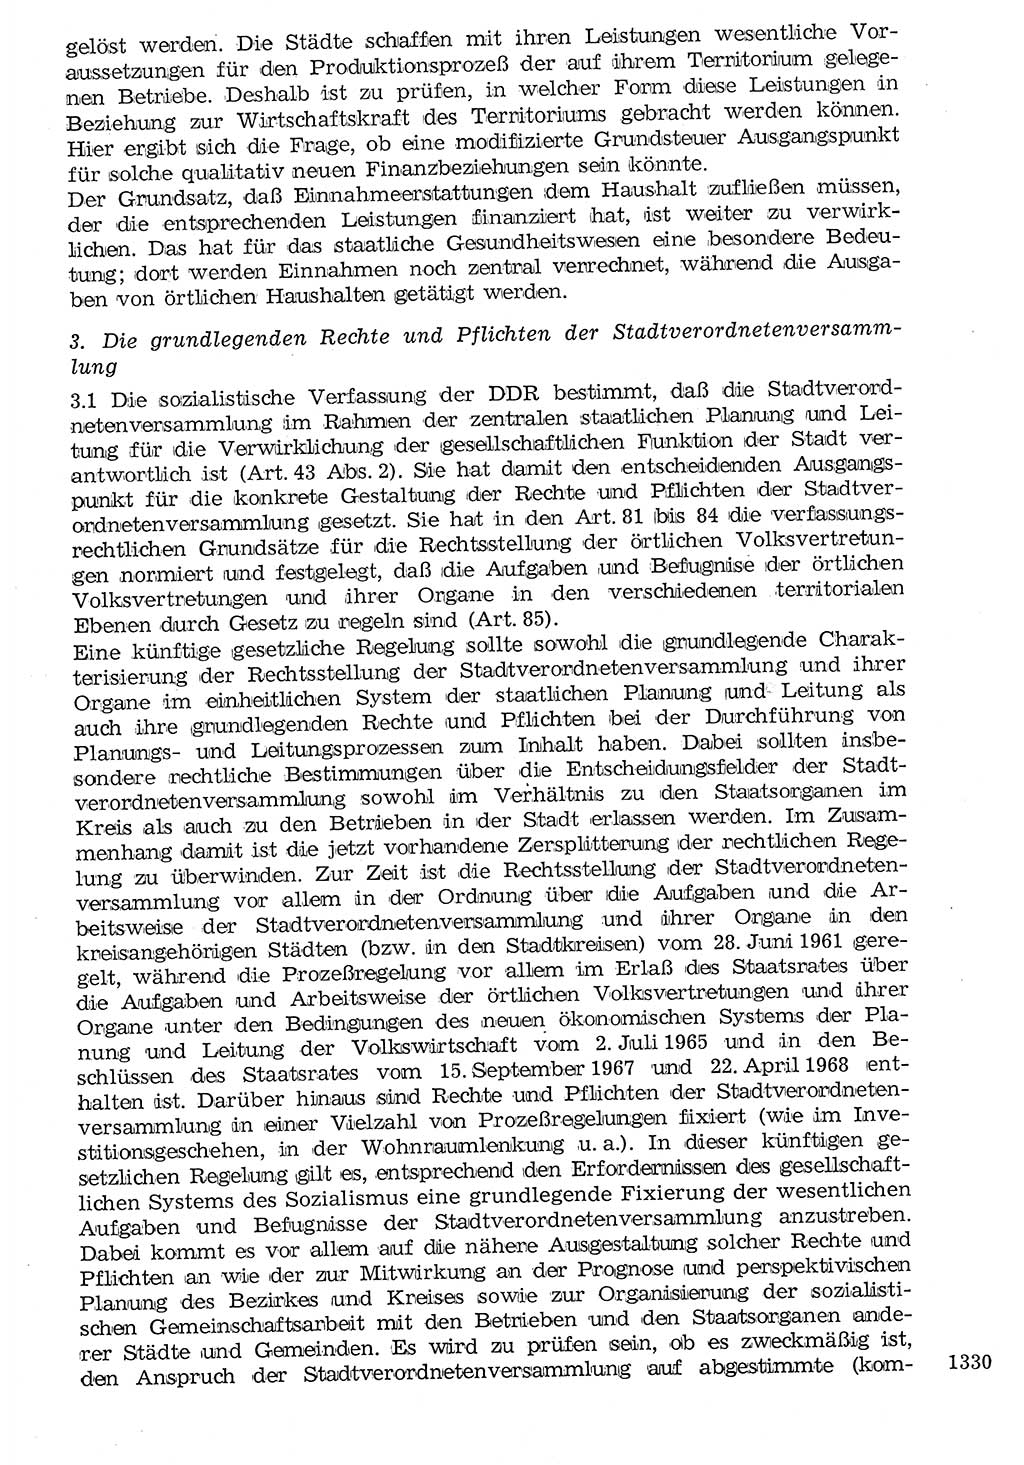 Staat und Recht (StuR), 17. Jahrgang [Deutsche Demokratische Republik (DDR)] 1968, Seite 1330 (StuR DDR 1968, S. 1330)